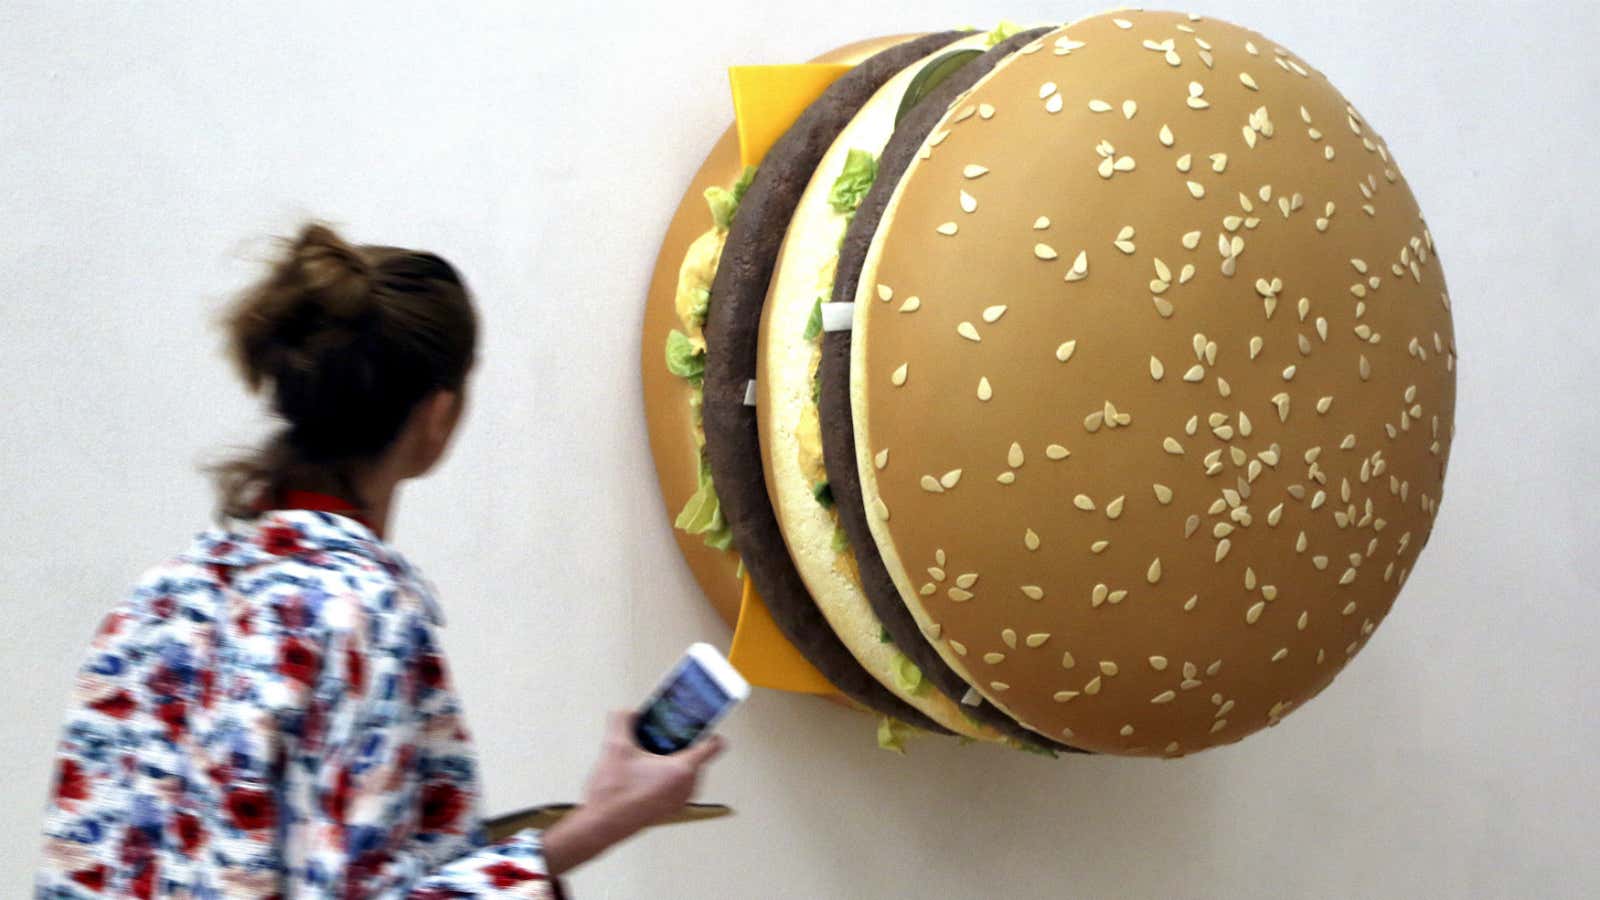 Burger, anyone?